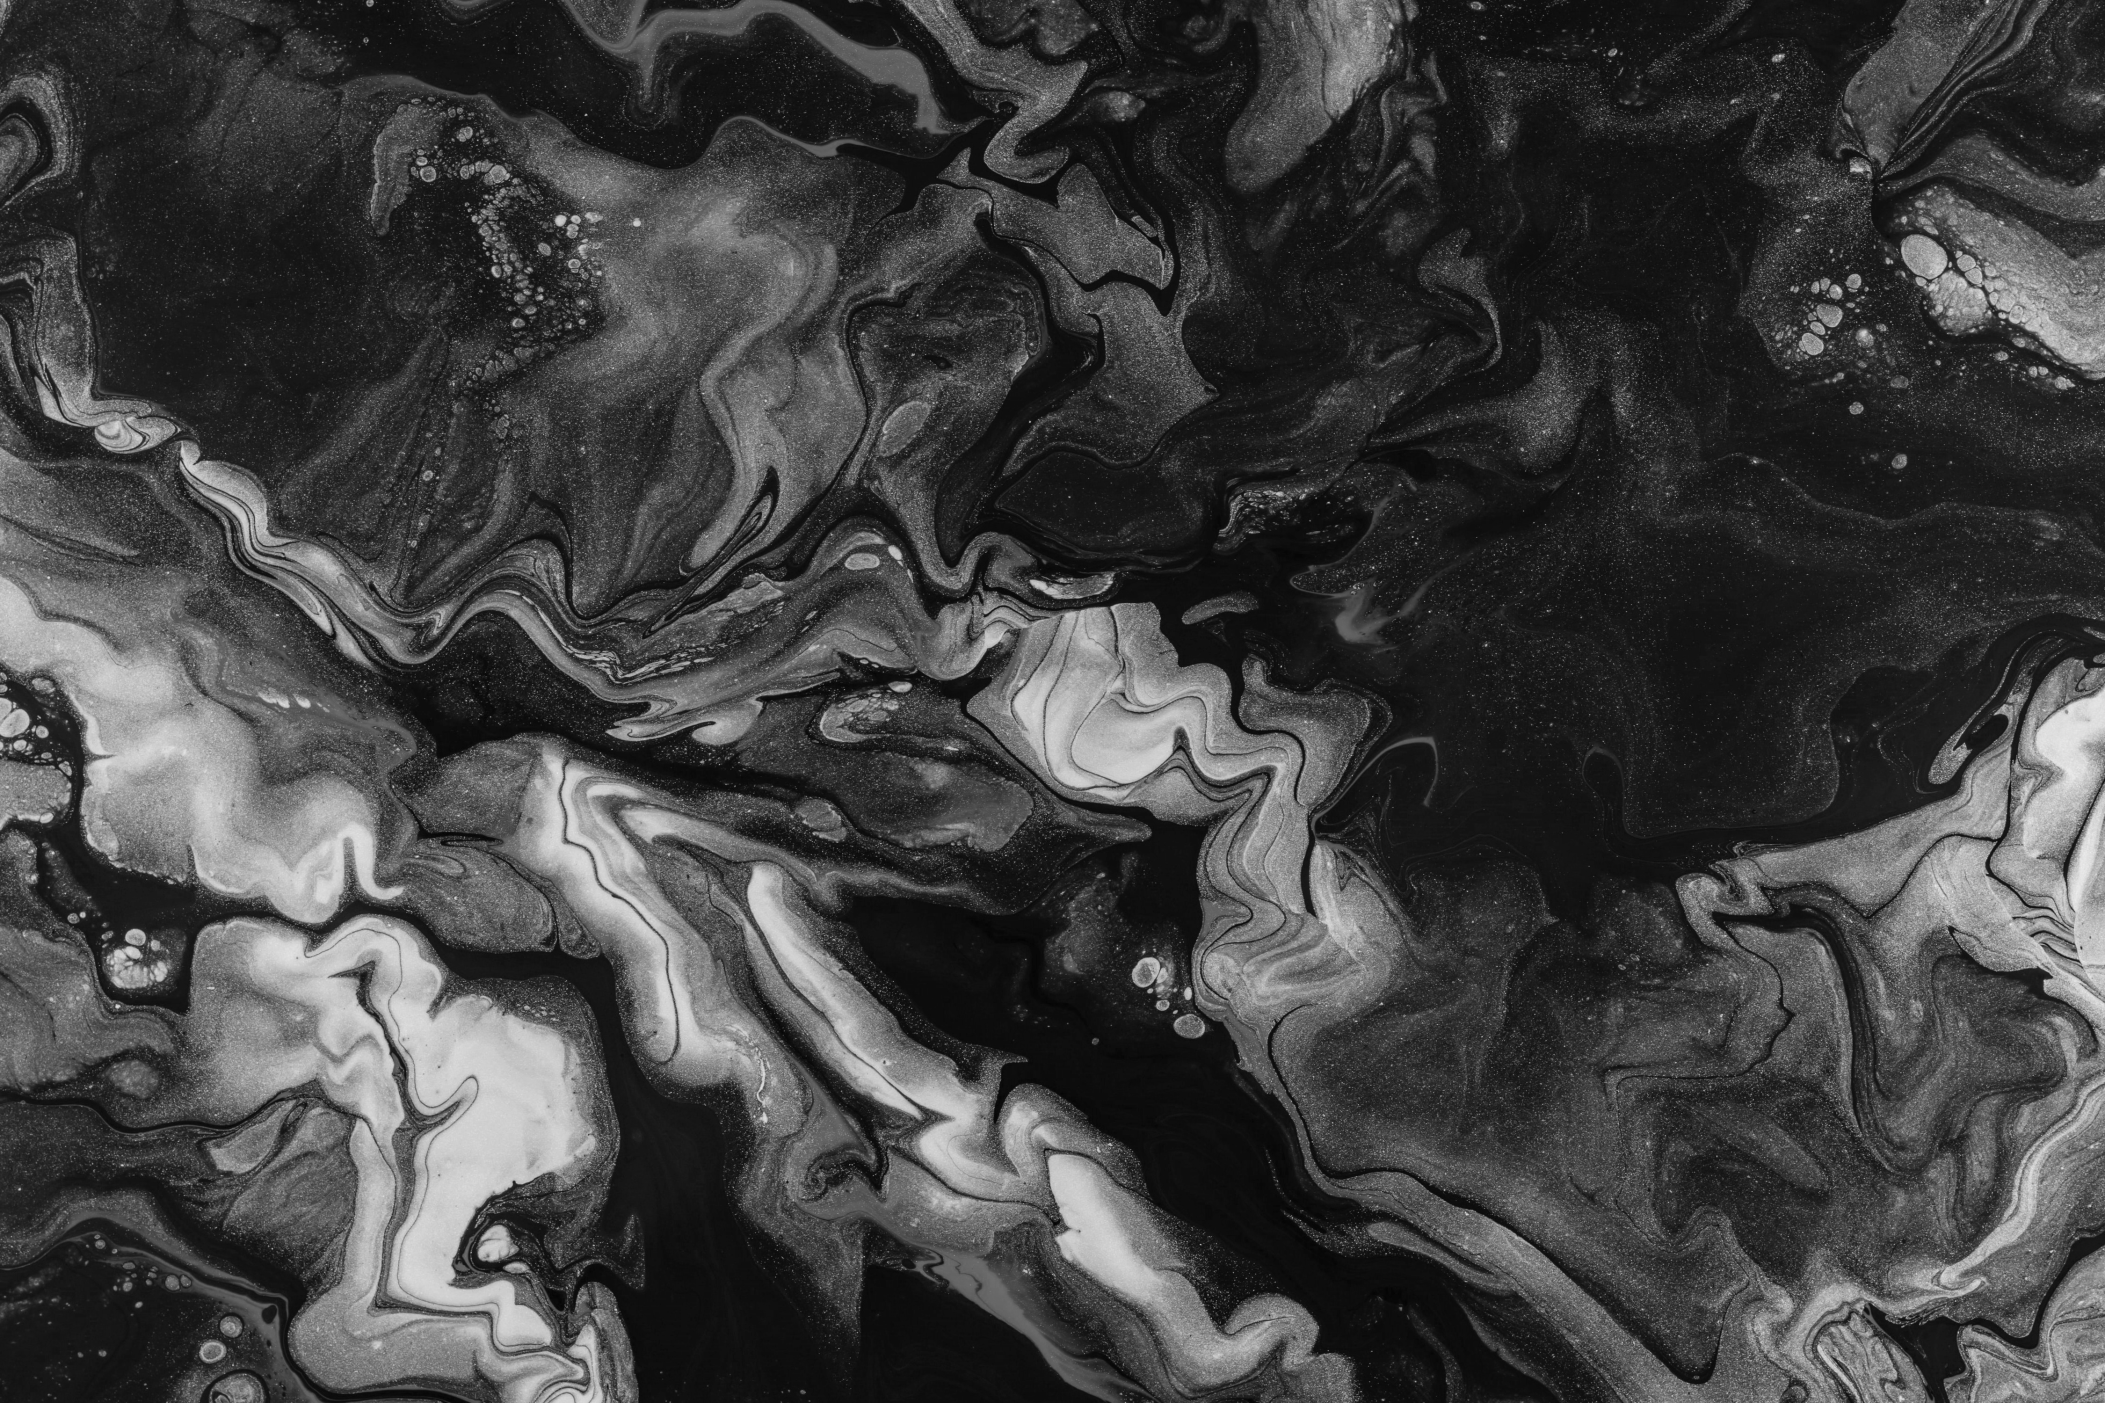 Black and White Swirl (2105 x 1403)